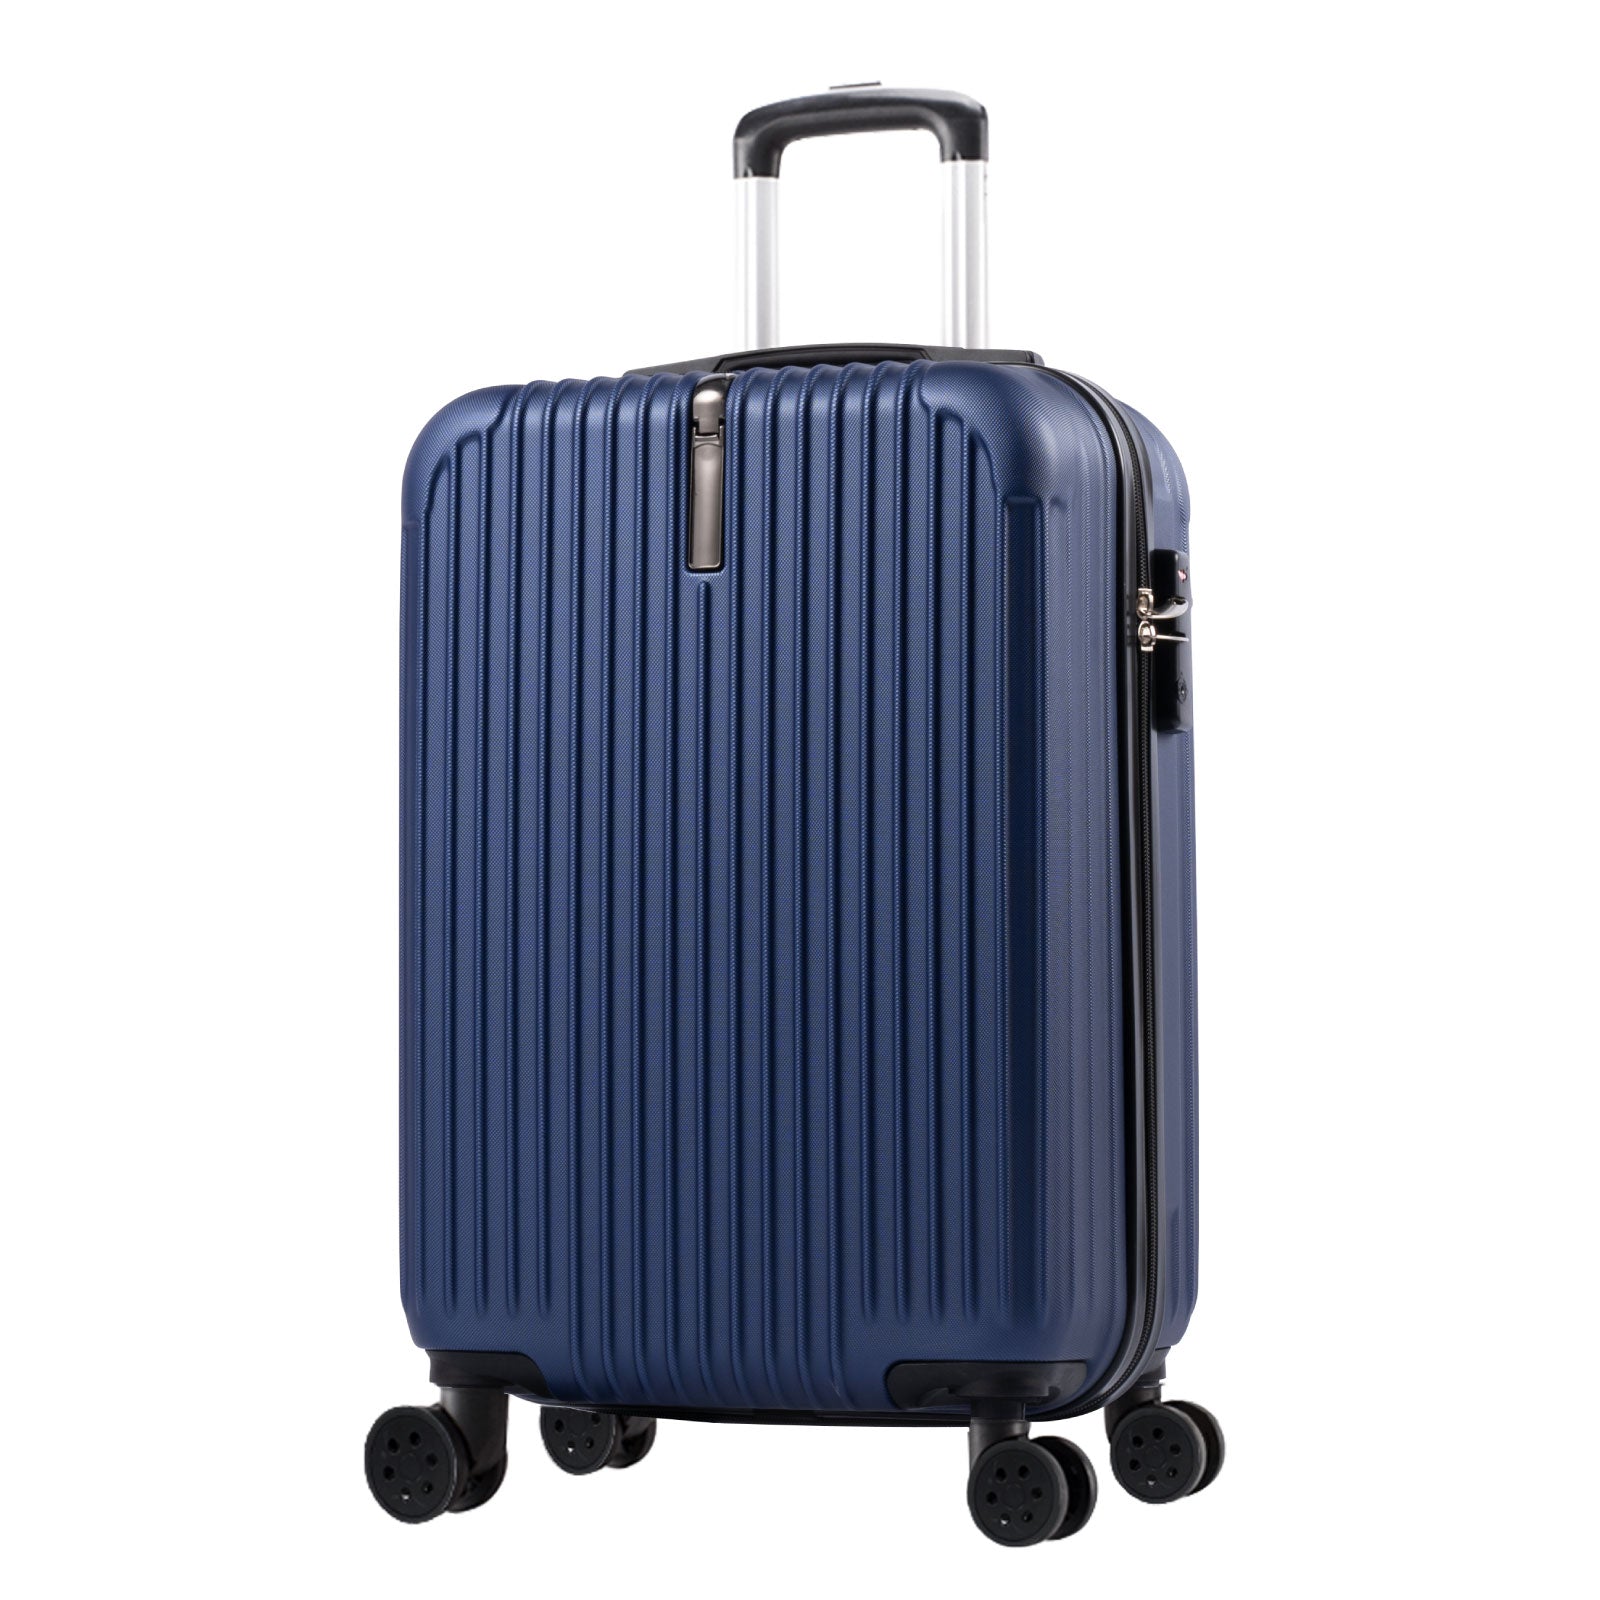 スーツケース キャリーケース Sサイズ 35L キャリーバッグ 6カラー選ぶ 1-3日用 泊まる 軽量設計 360度回転 大容量 ファスナー式 ビジネス 修学旅行 海外旅行 国内旅行 小型 出張 sc171-20